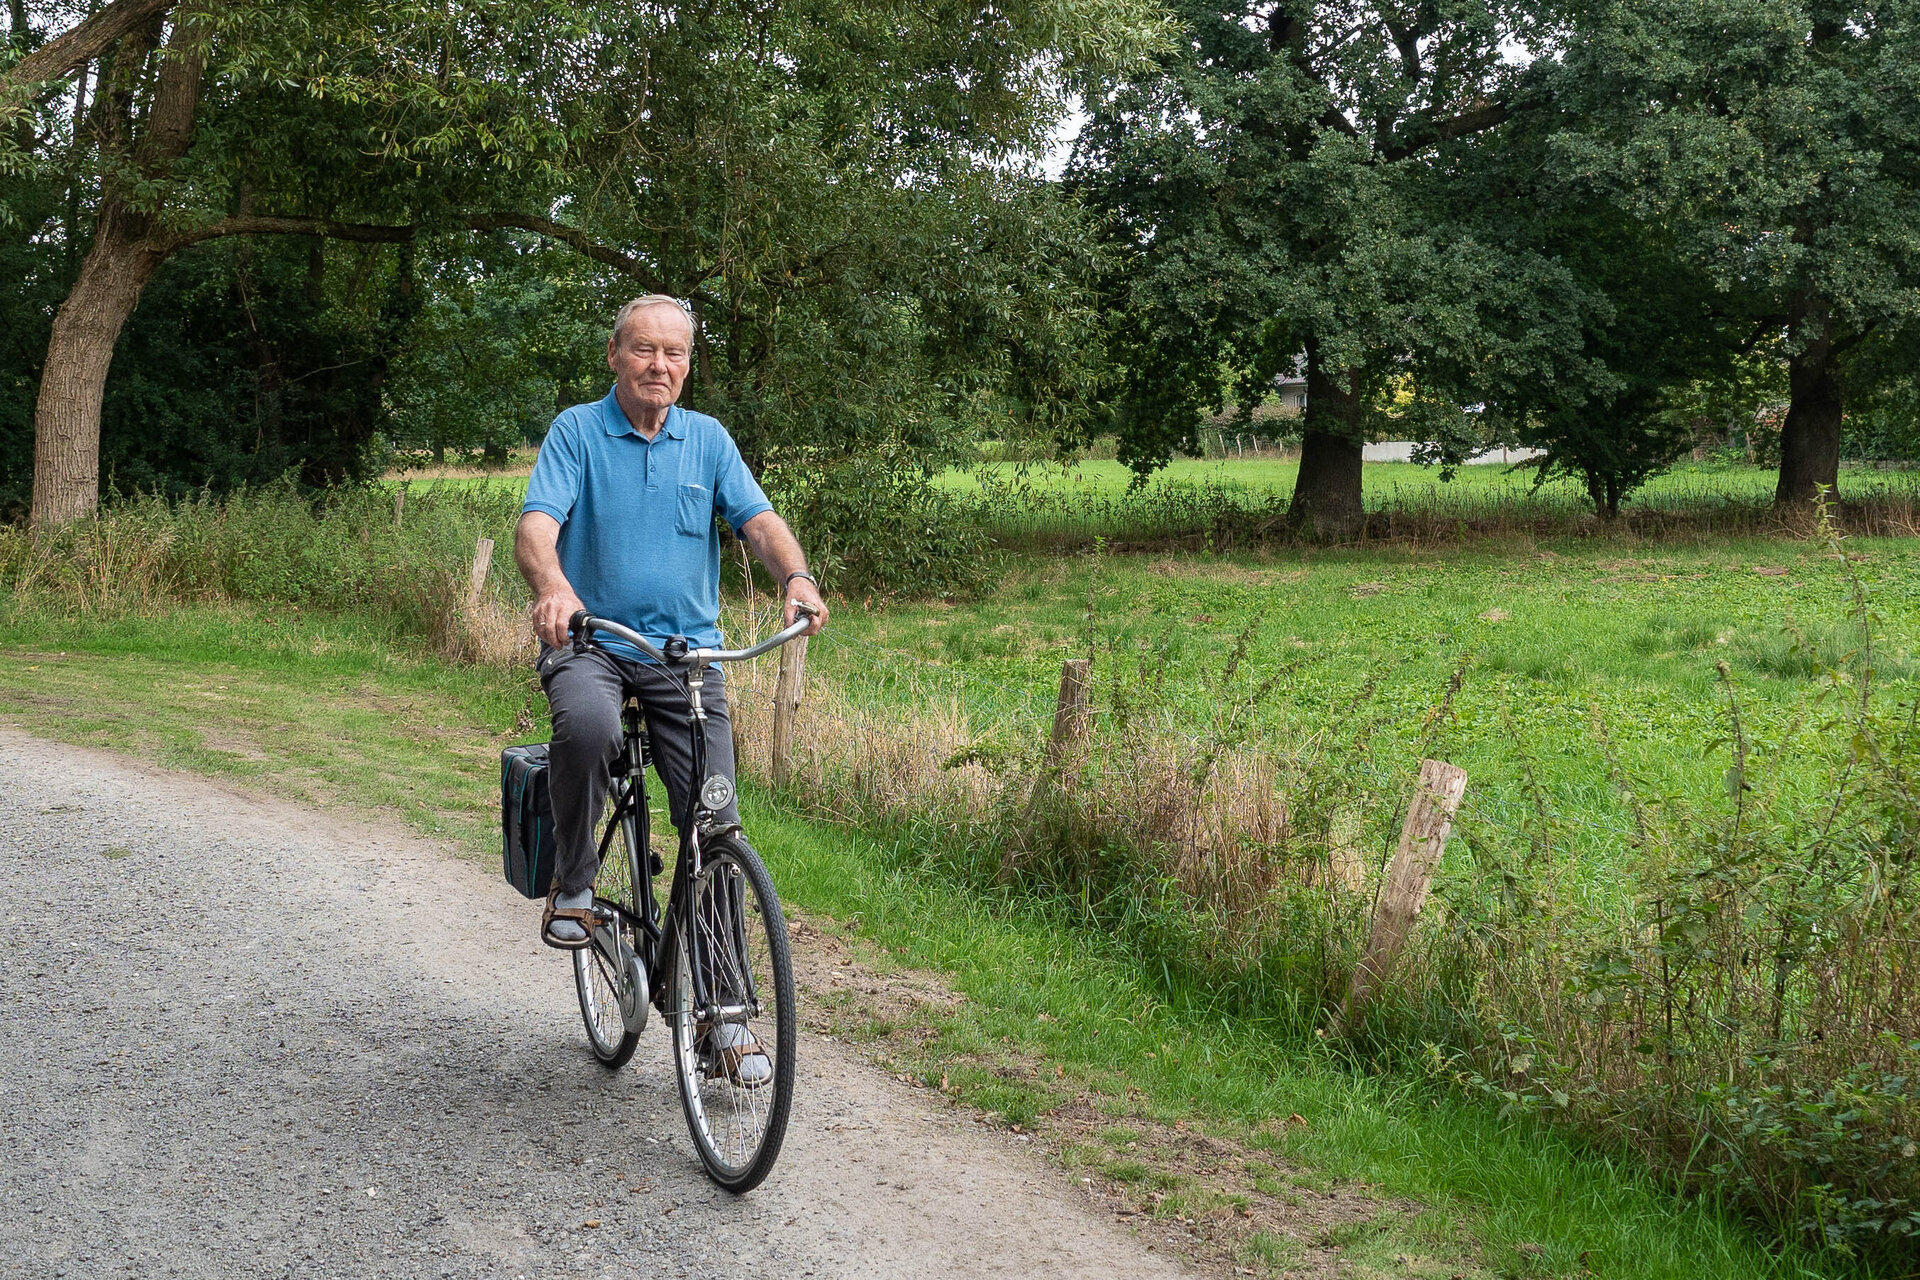 Viele der befragten älteren Menschen halten sich im Alltag durch Bewegung fit – insbesondere durchs Radfahren. Fotos: Sonja Dilz/Jade HS